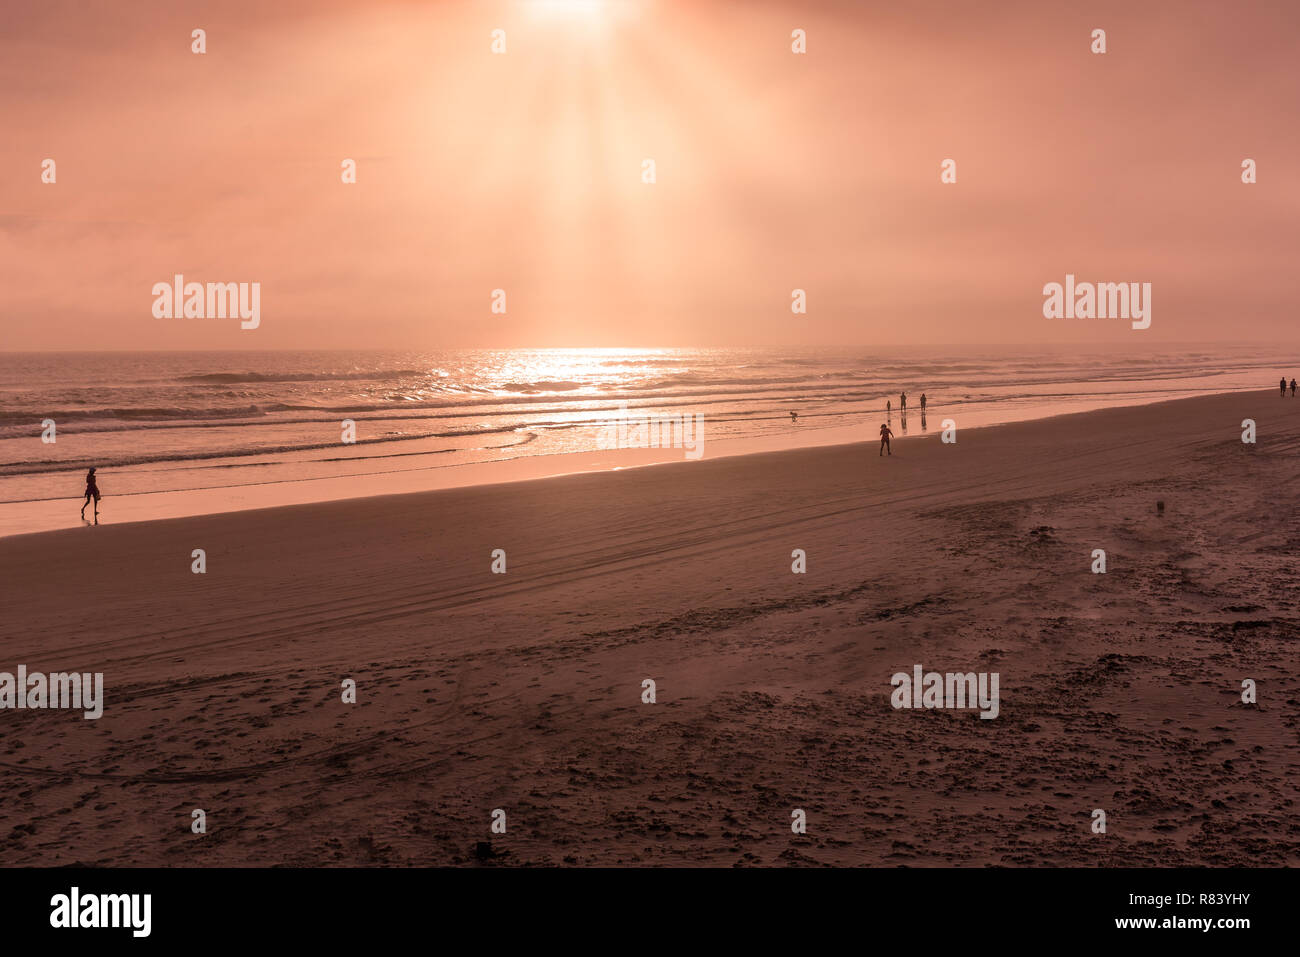 Silueta de personas jugando y caminar en la playa de Florida Foto de stock